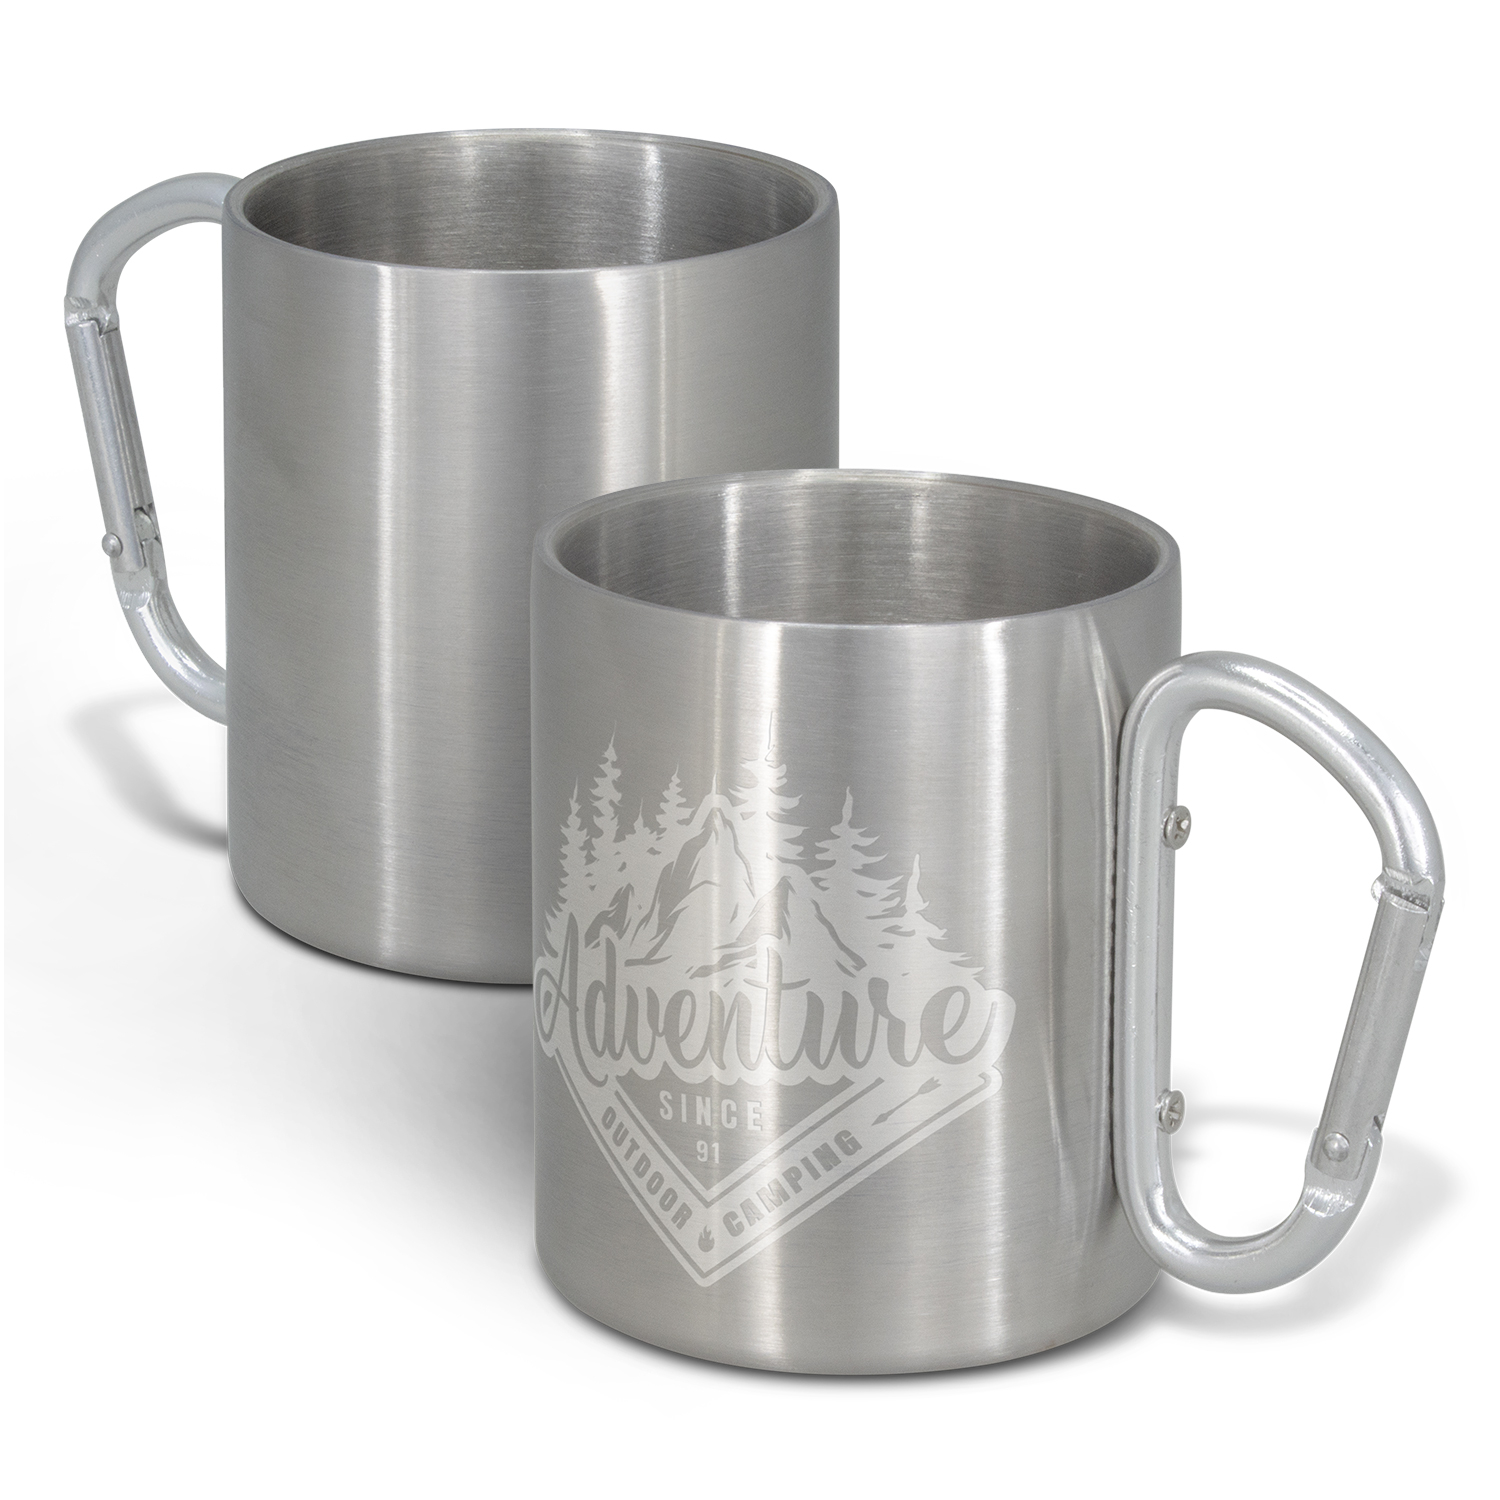 Cups & Tumblers Carabiner Coffee Mug carabiner